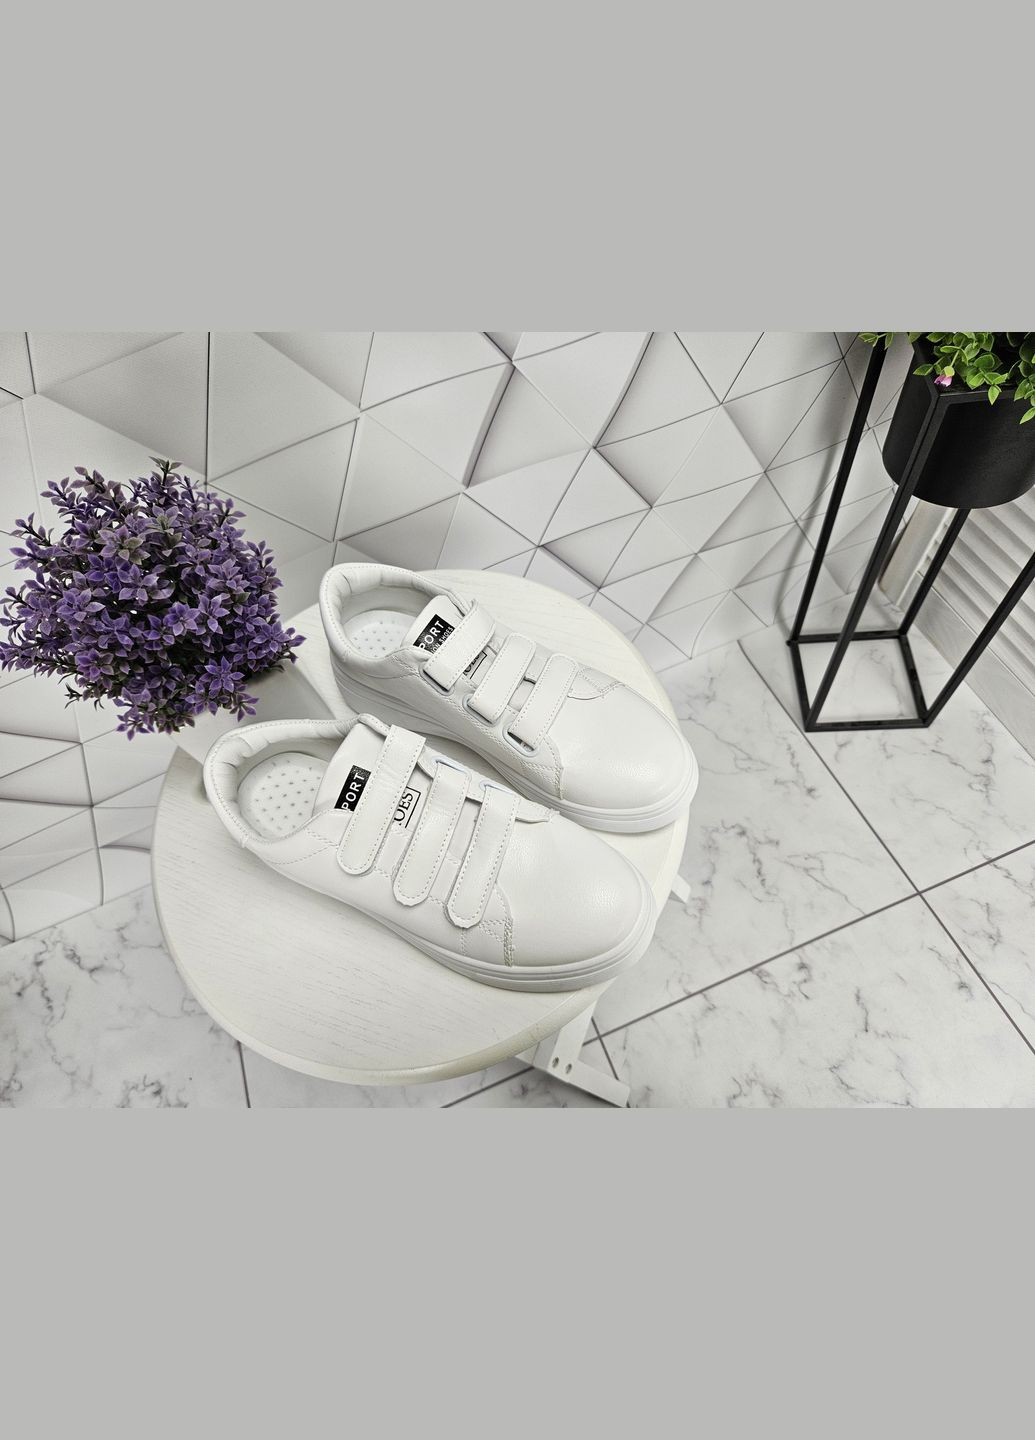 Белые кроссовки на высокой платформе на липучках белые (24 см) sp-2890 No Brand